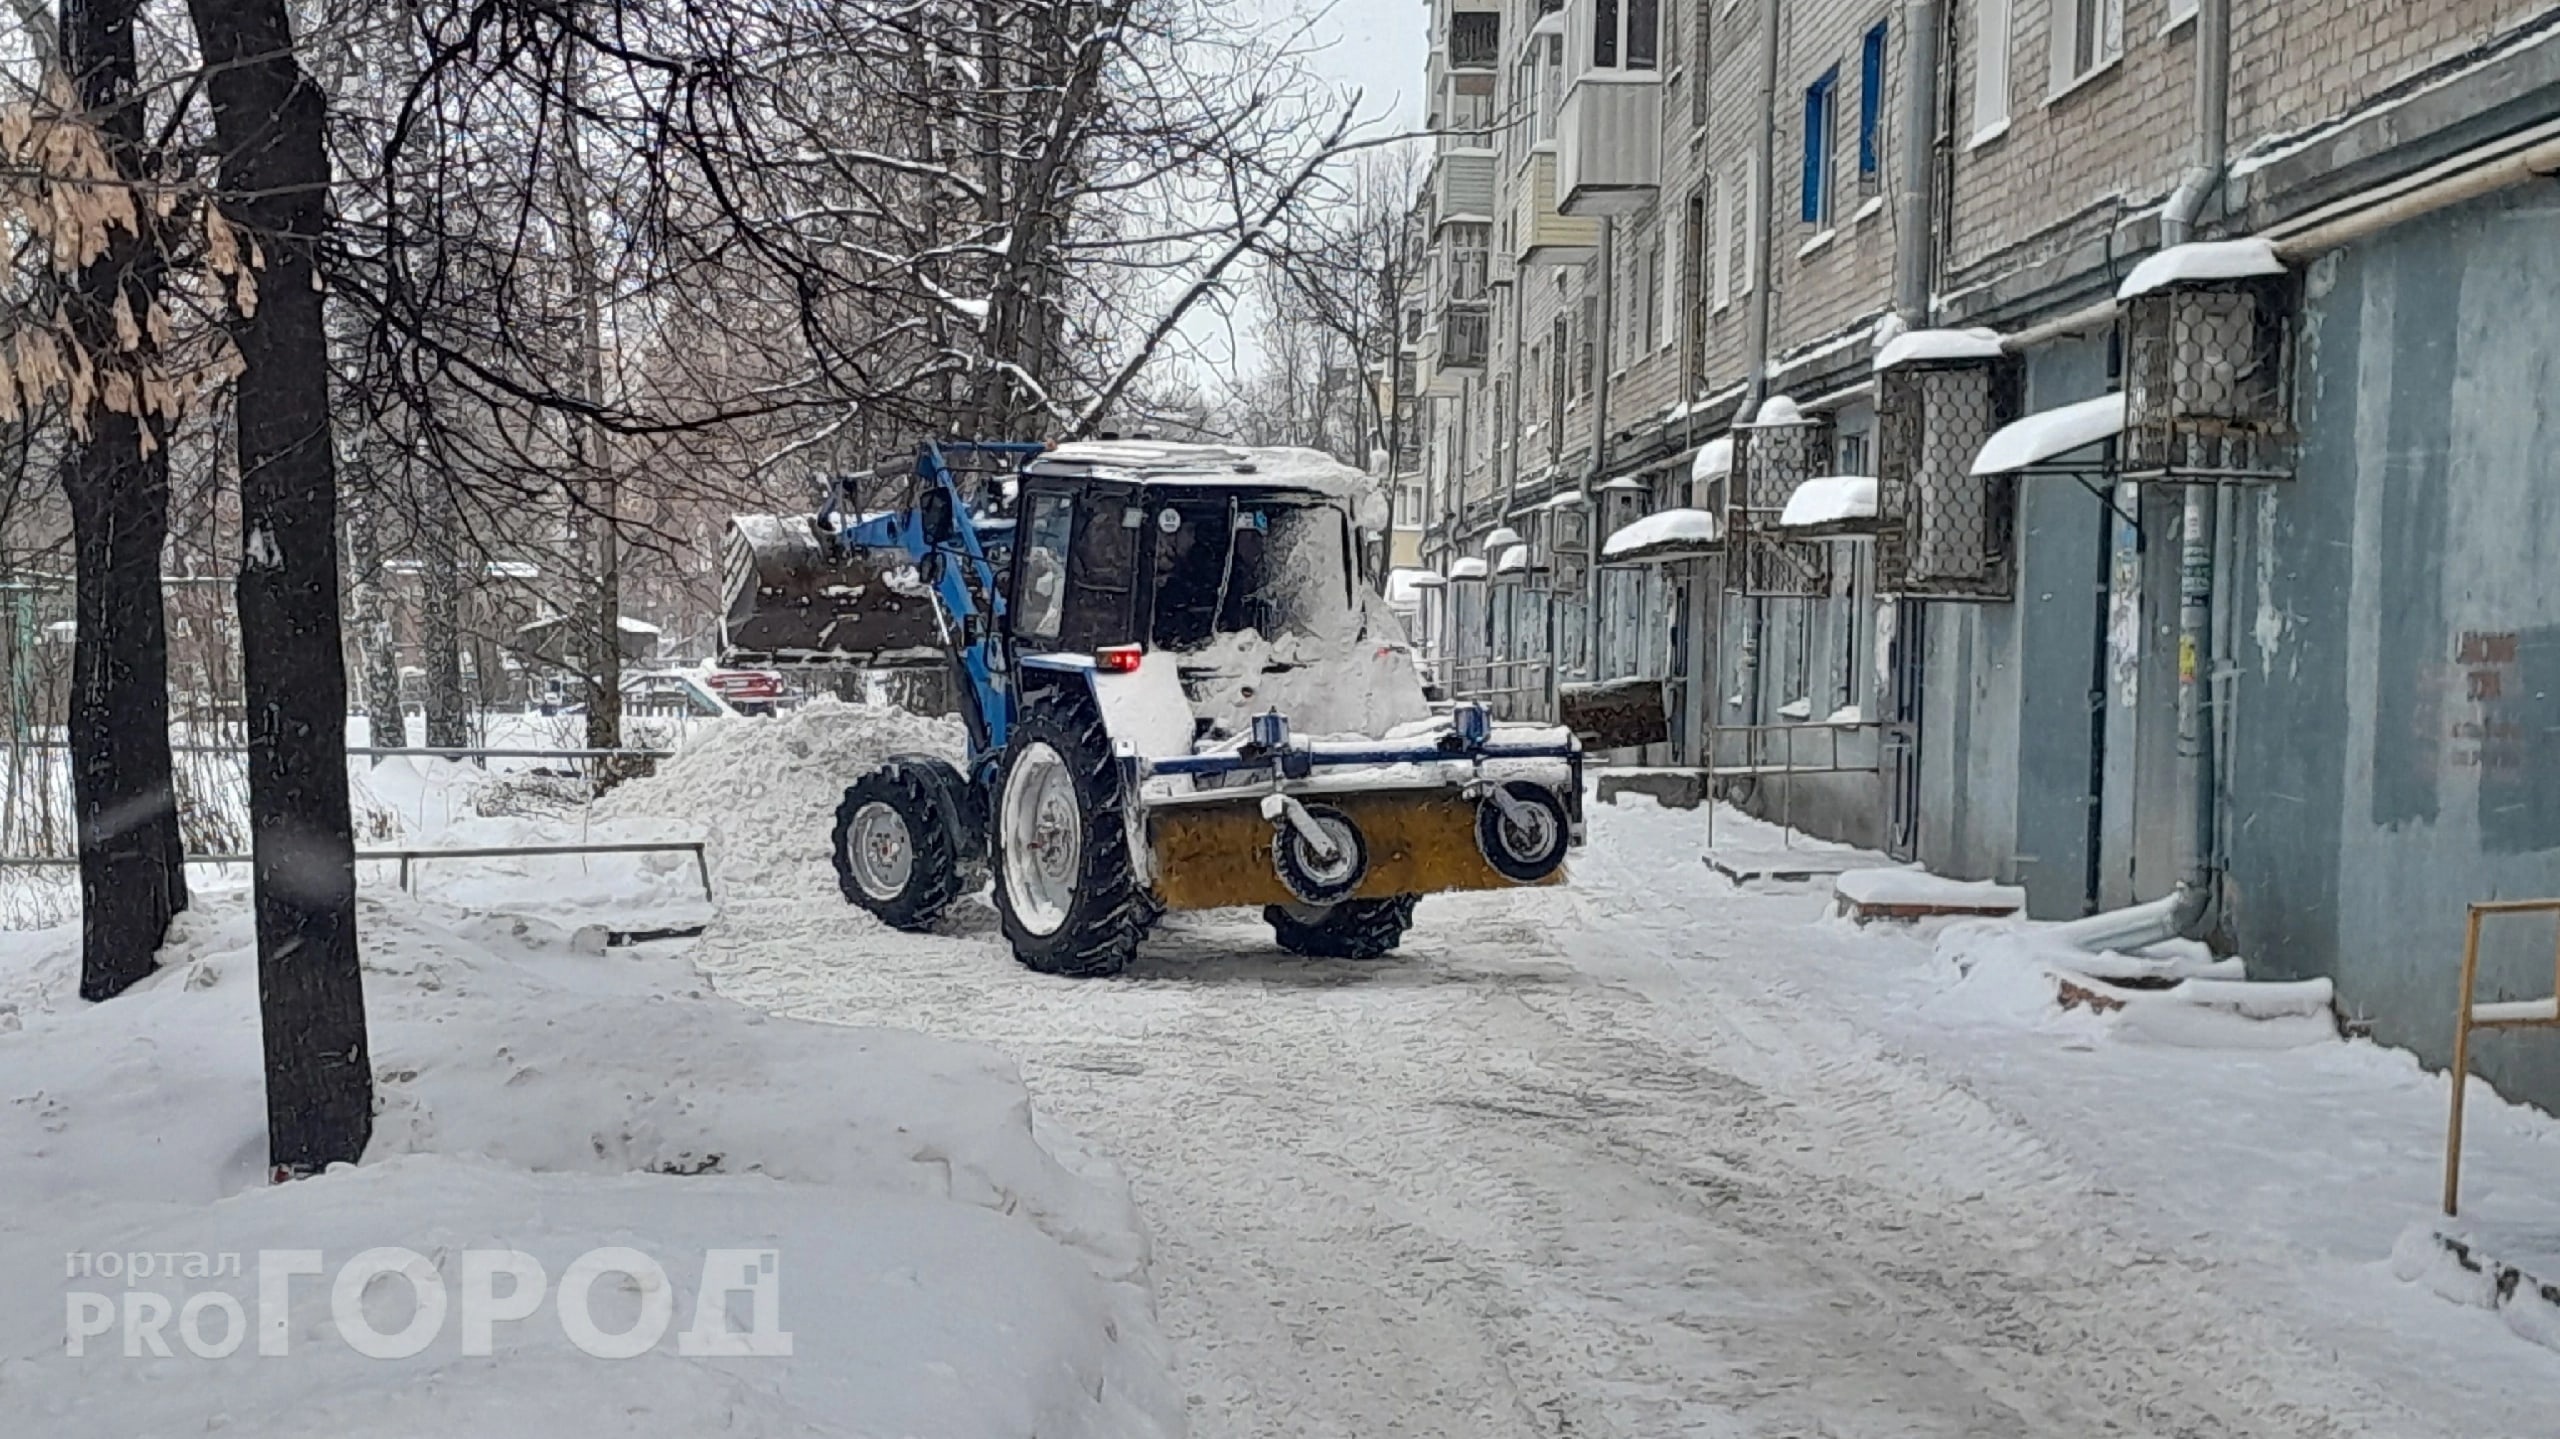 Жители Чебоксар зарабатывают на снегопадах: сколько стоит уборка снега в городе